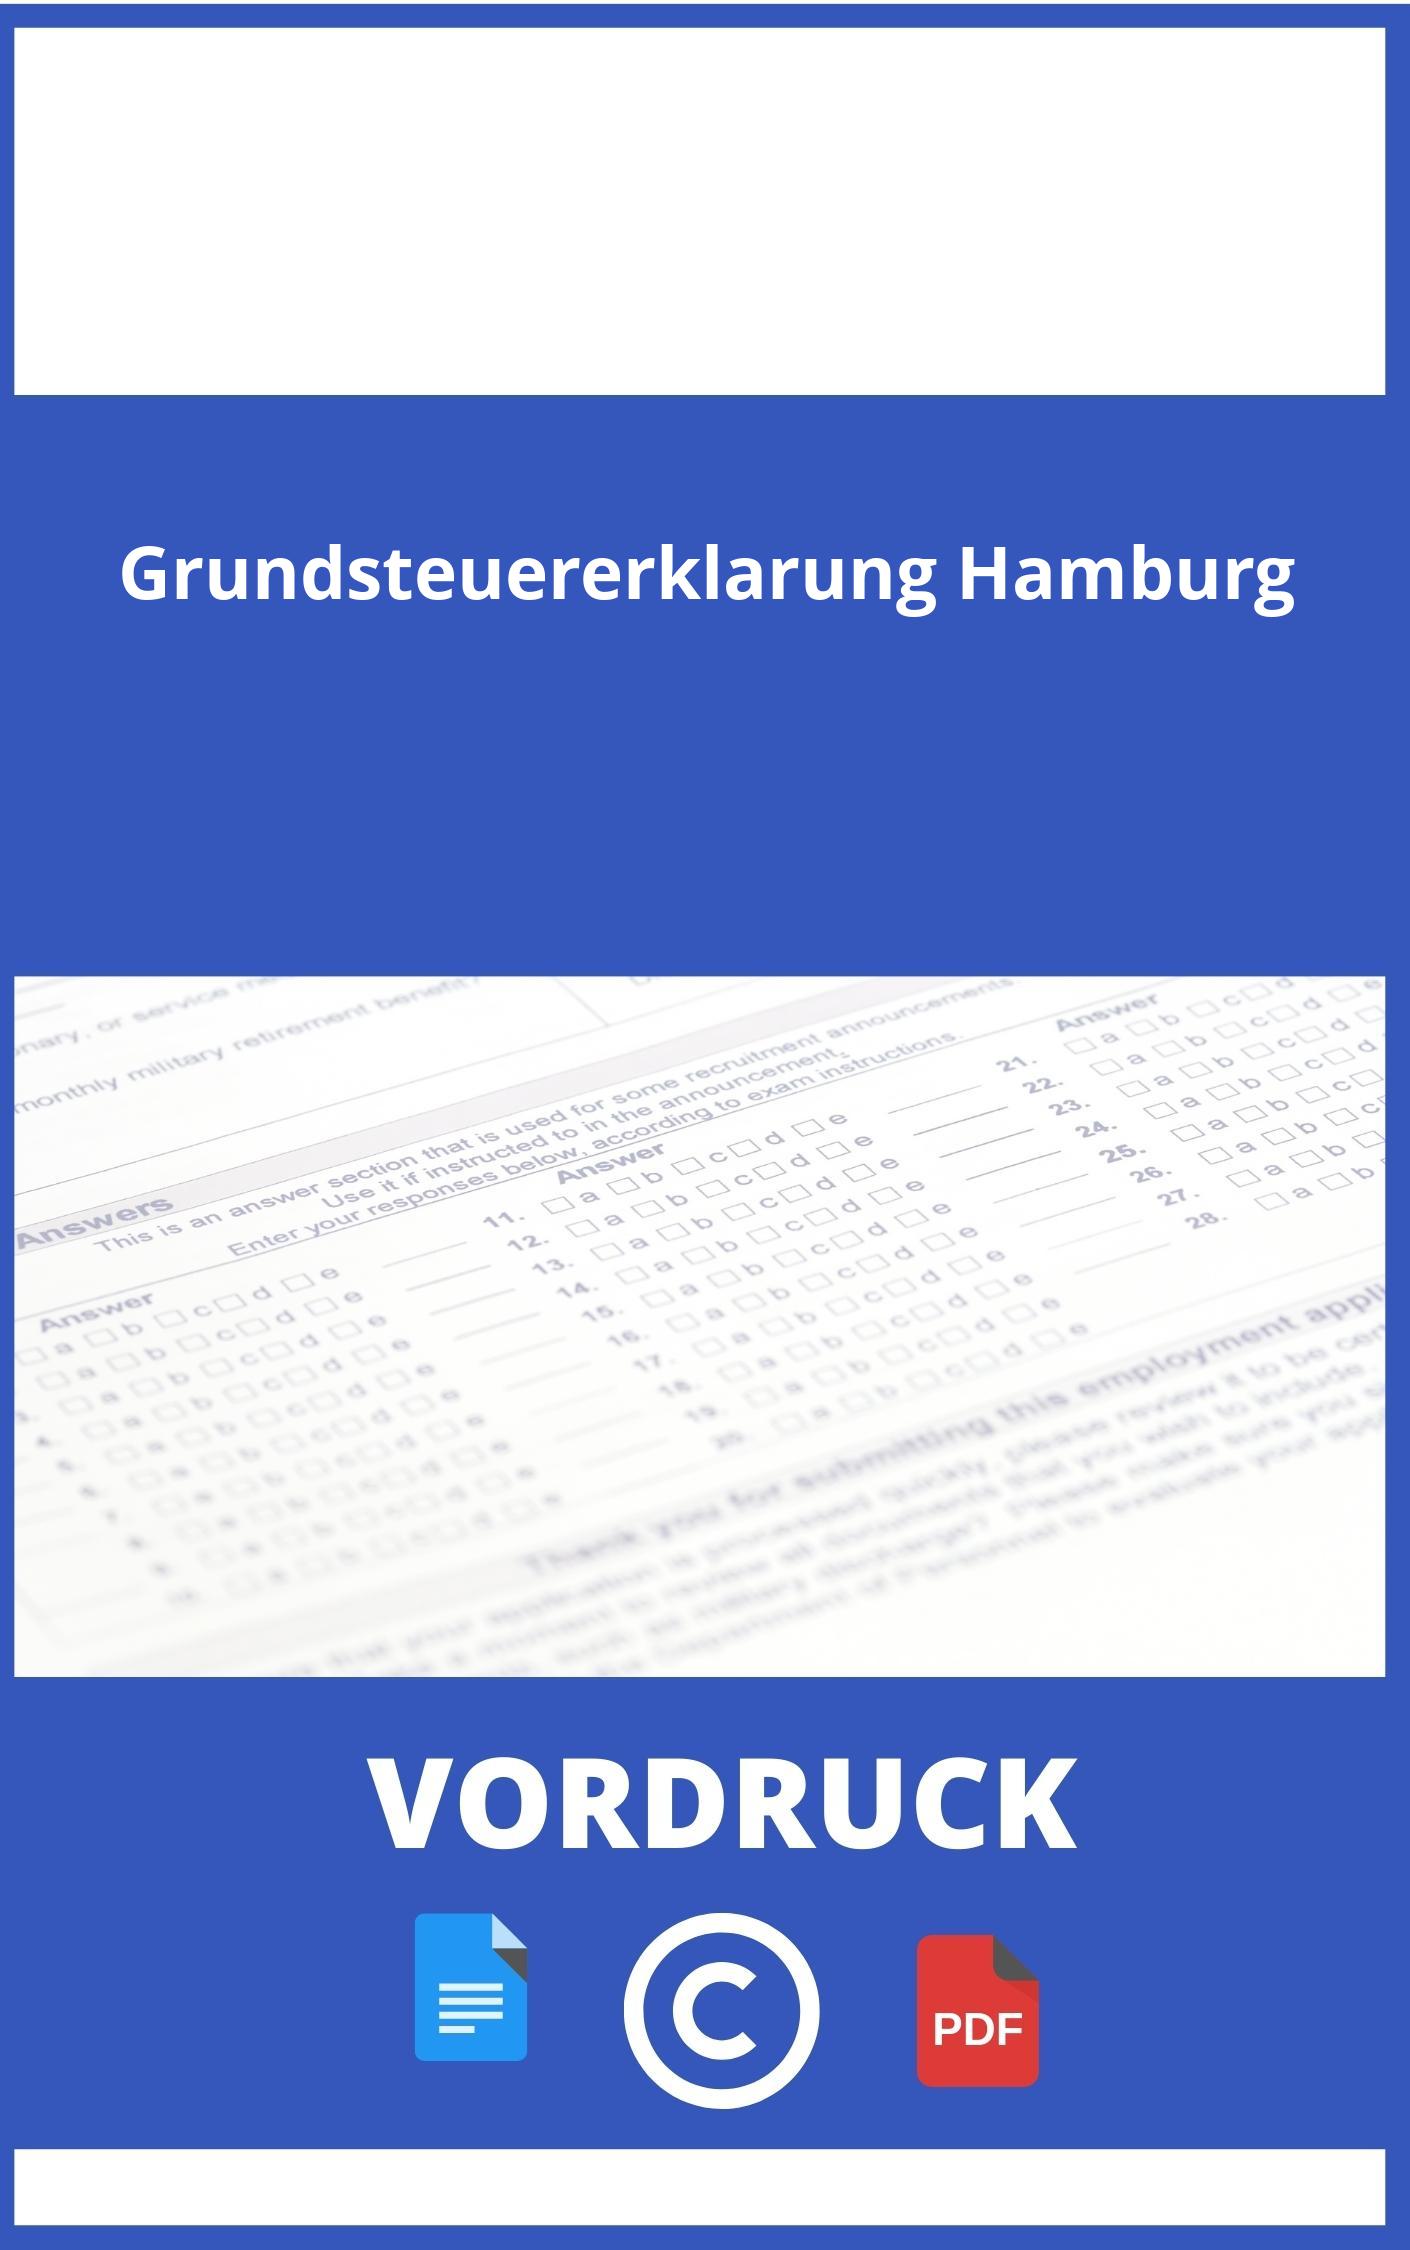 Grundsteuererklärung Hamburg Vordruck